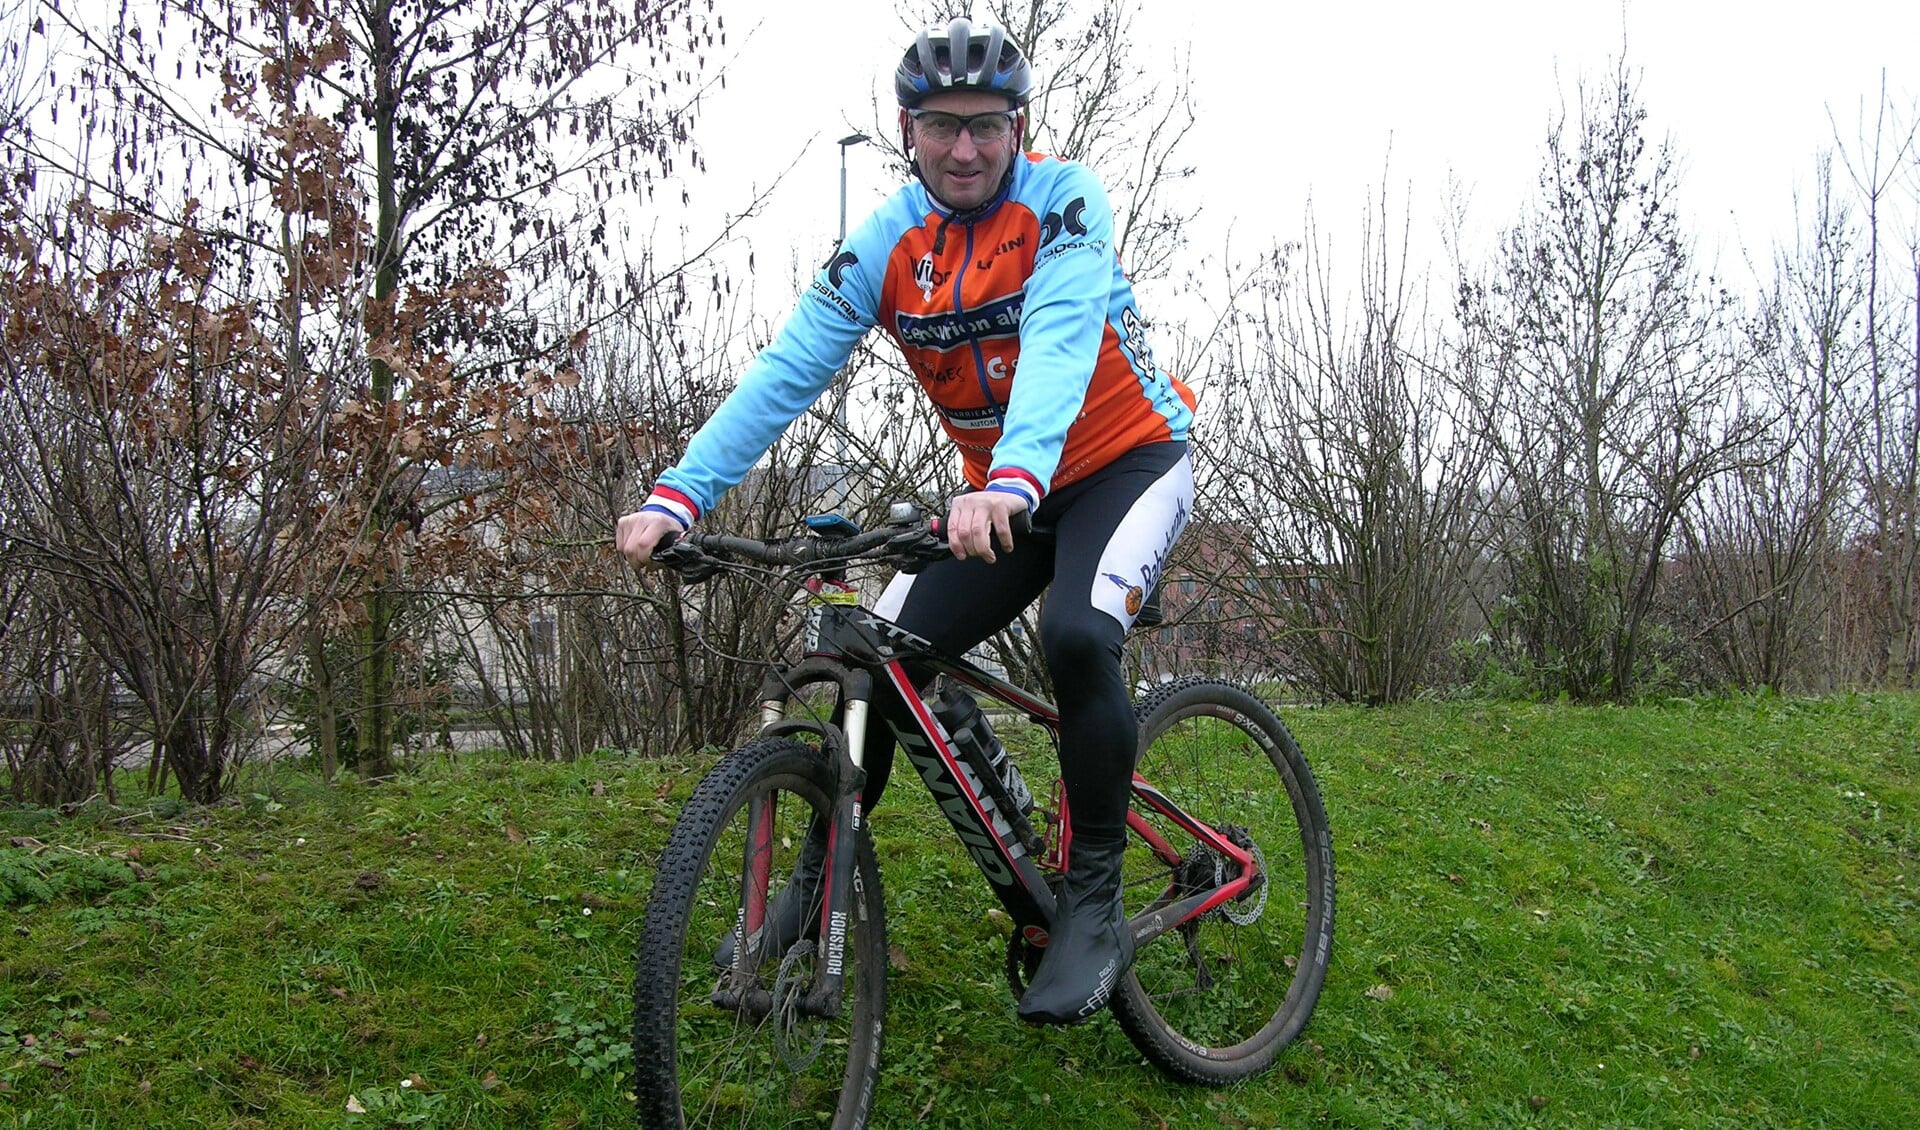 Voetbaltrainer Huub van Laarschot op zijn mountainbike, zijn tweede hobby naast het voetbal. Foto: John van der Kamp